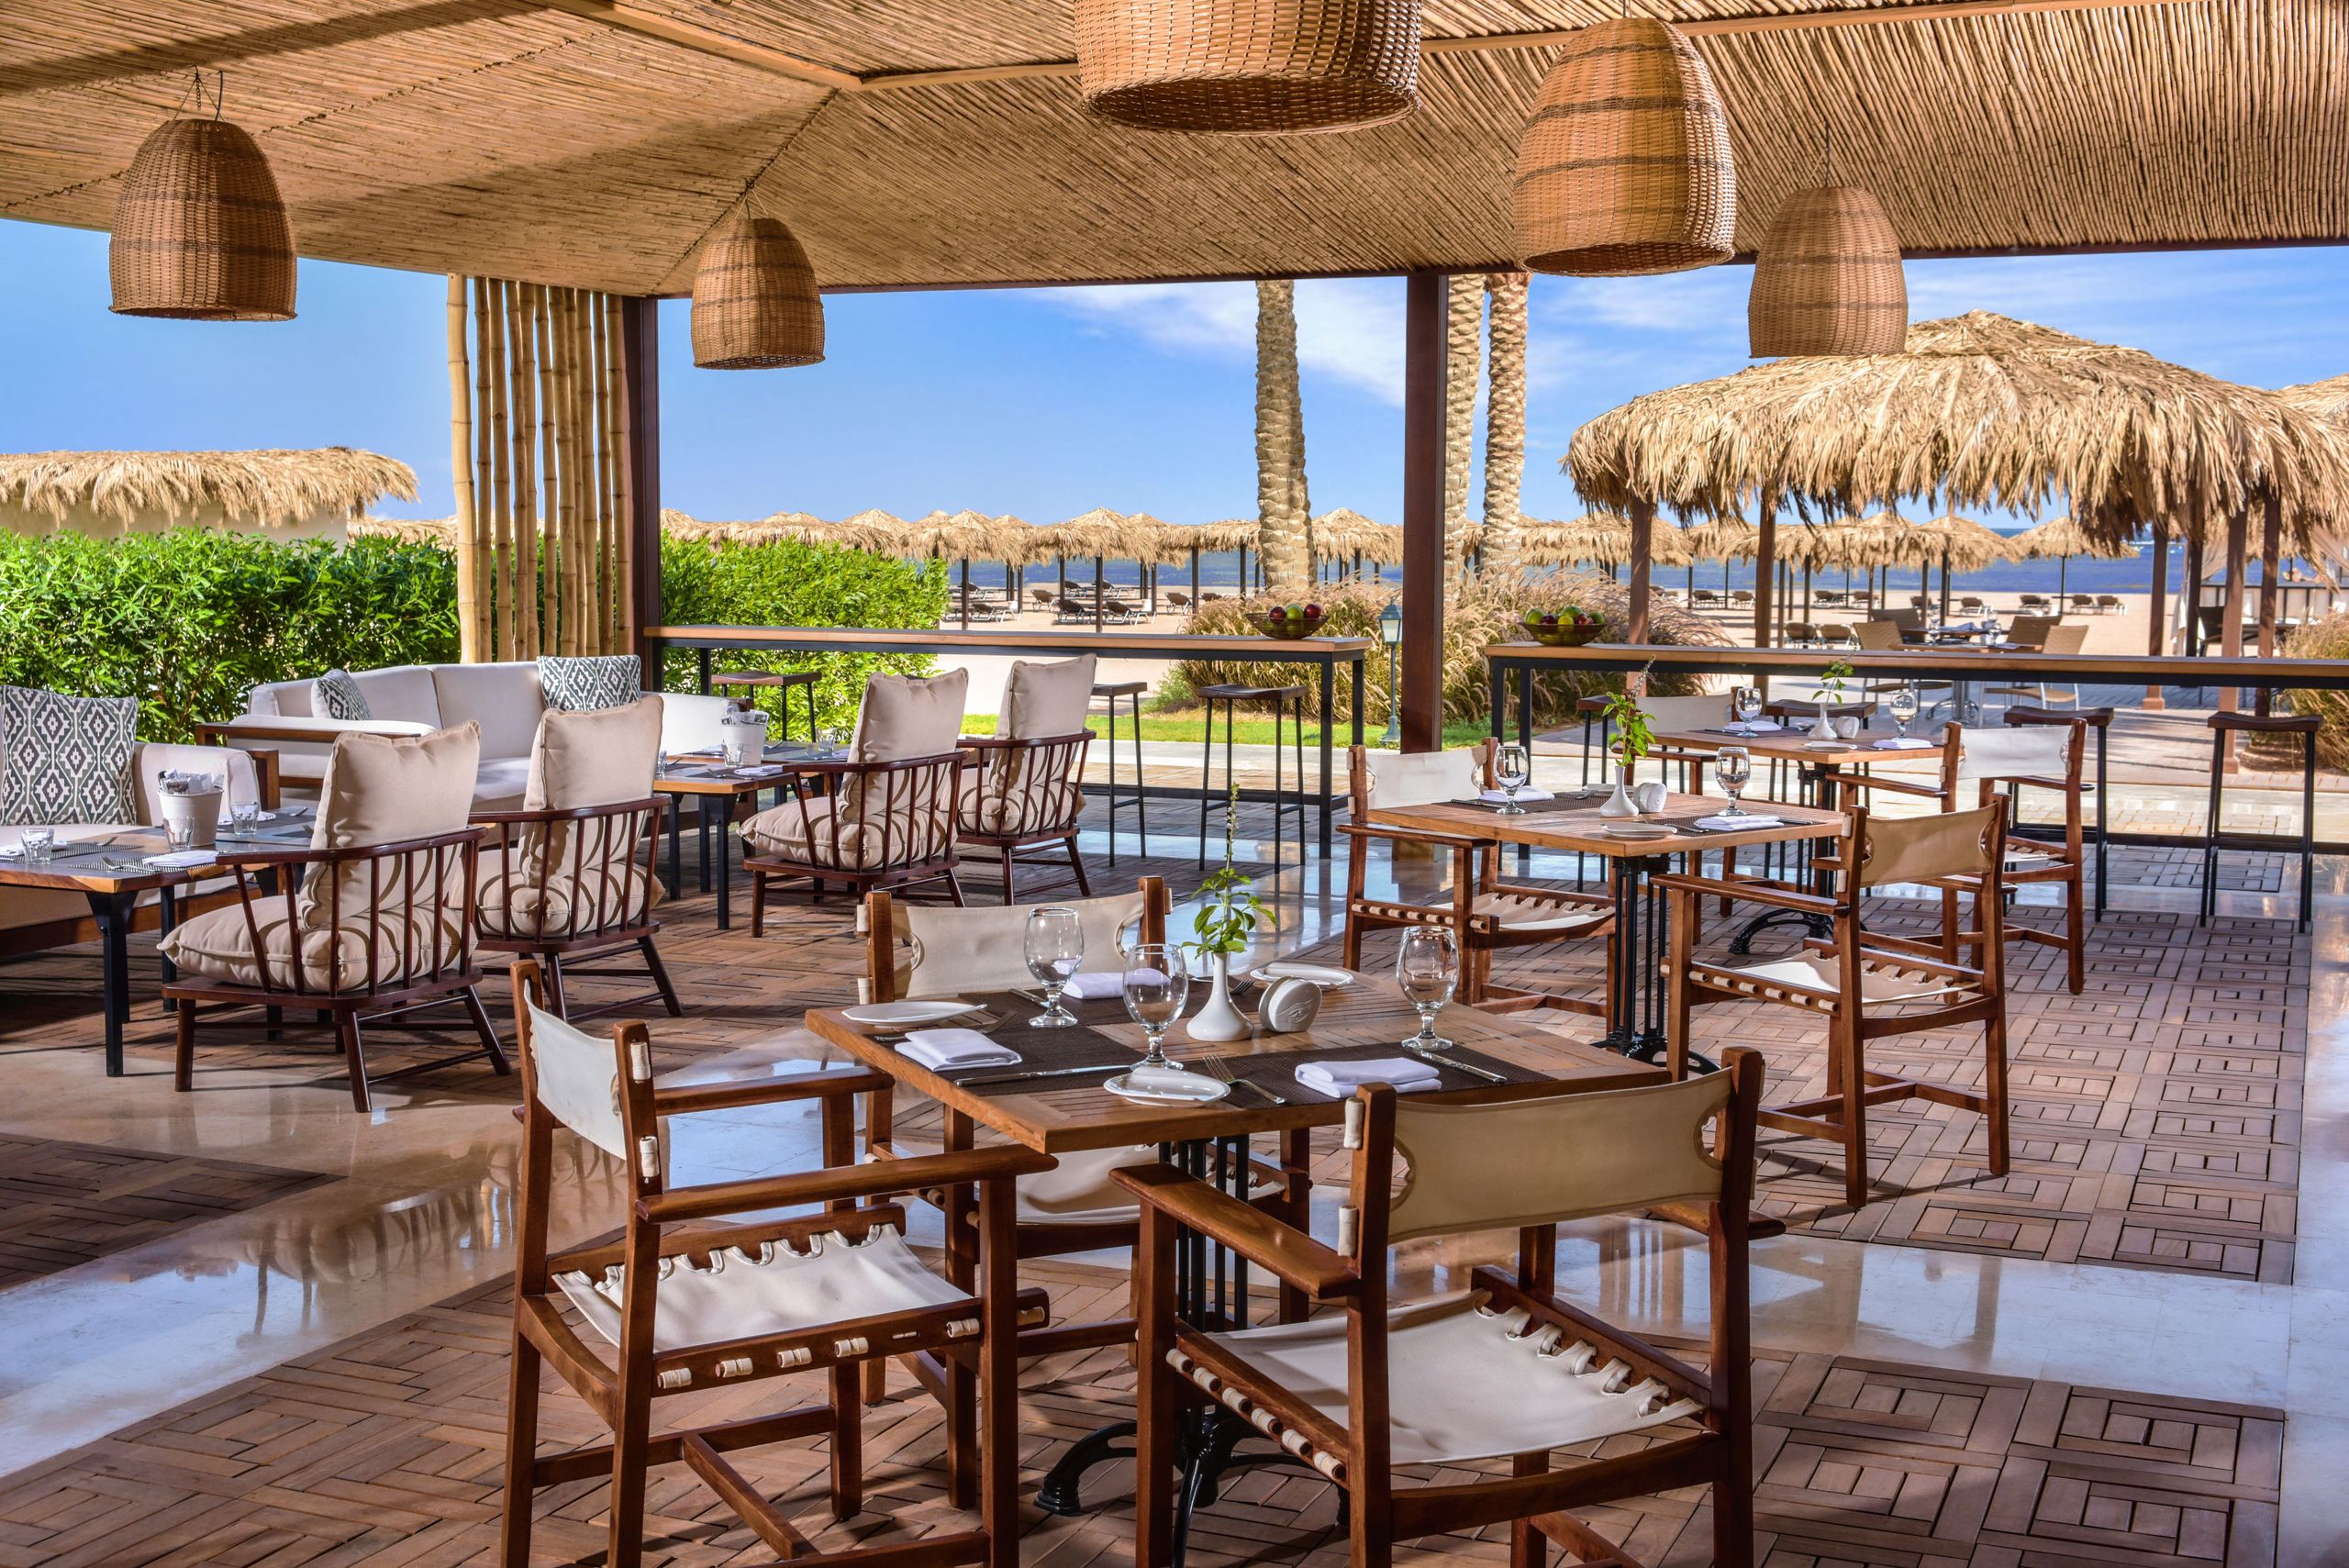 Steigenberger Alcazar - Sharm El Sheikh - Egypten - Sanafir Restaurant and Beach Bar